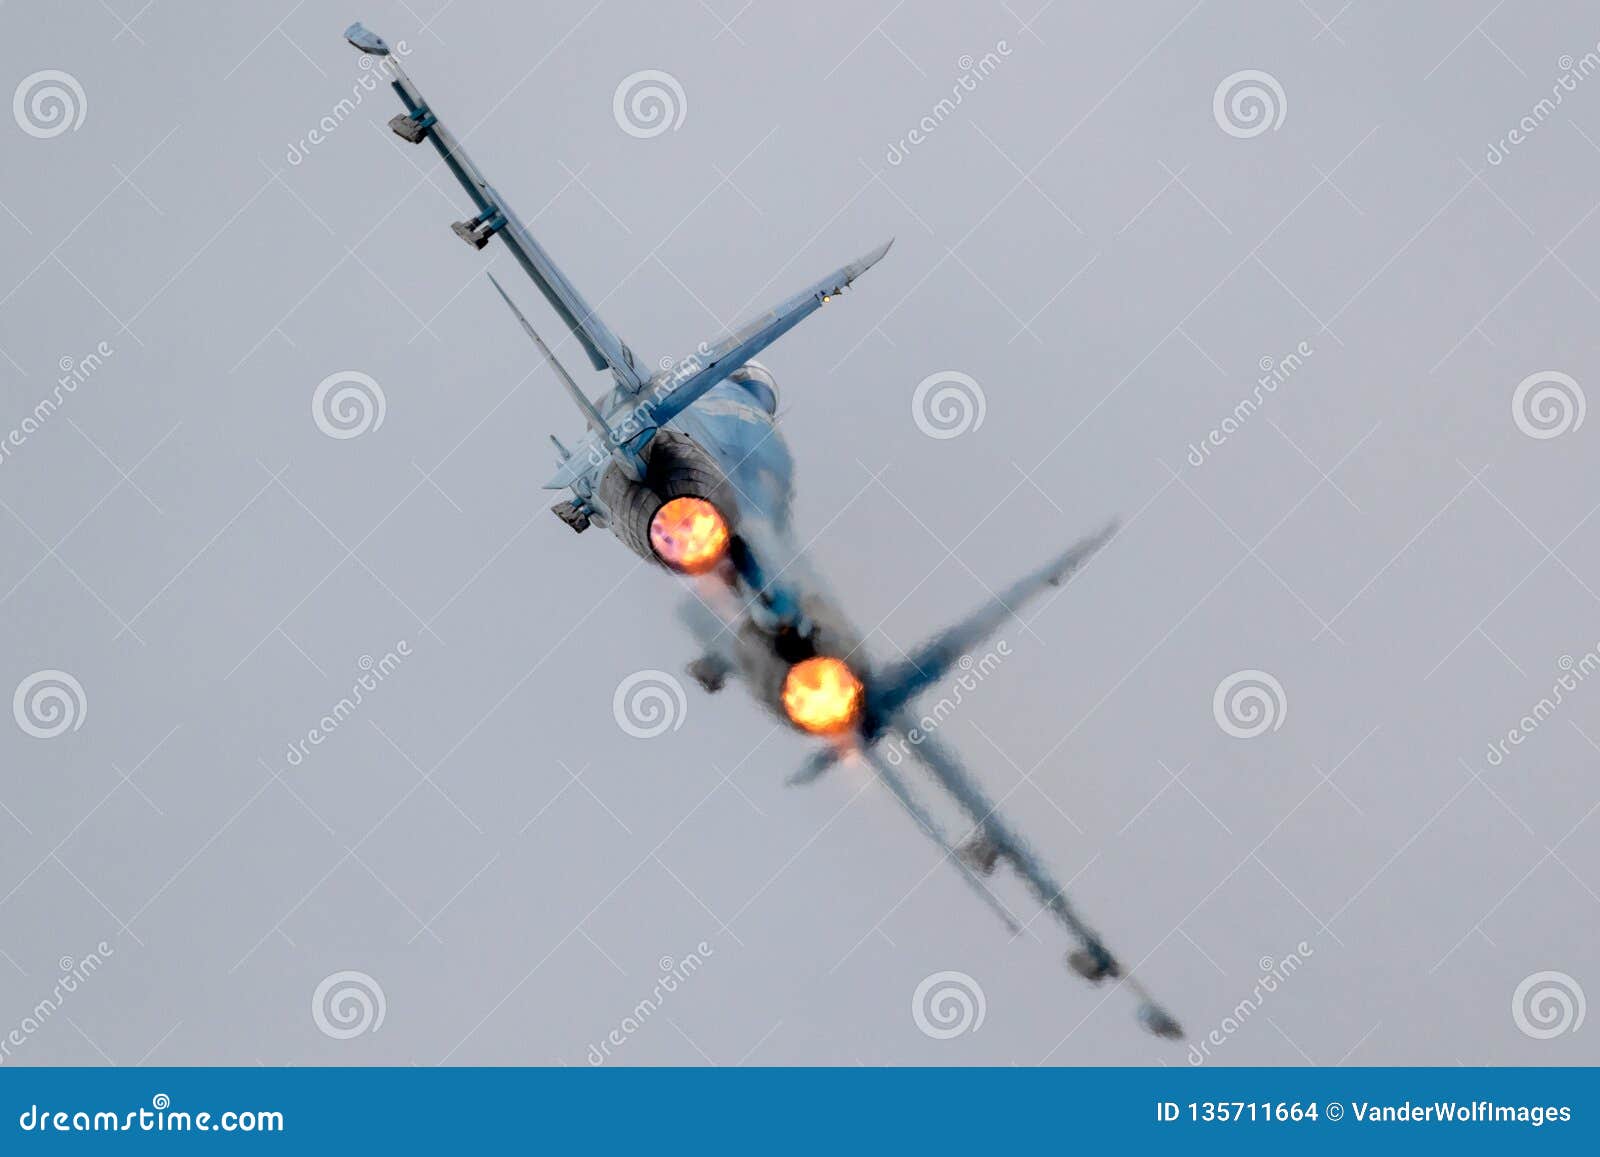 fighter jet full afterburner take off